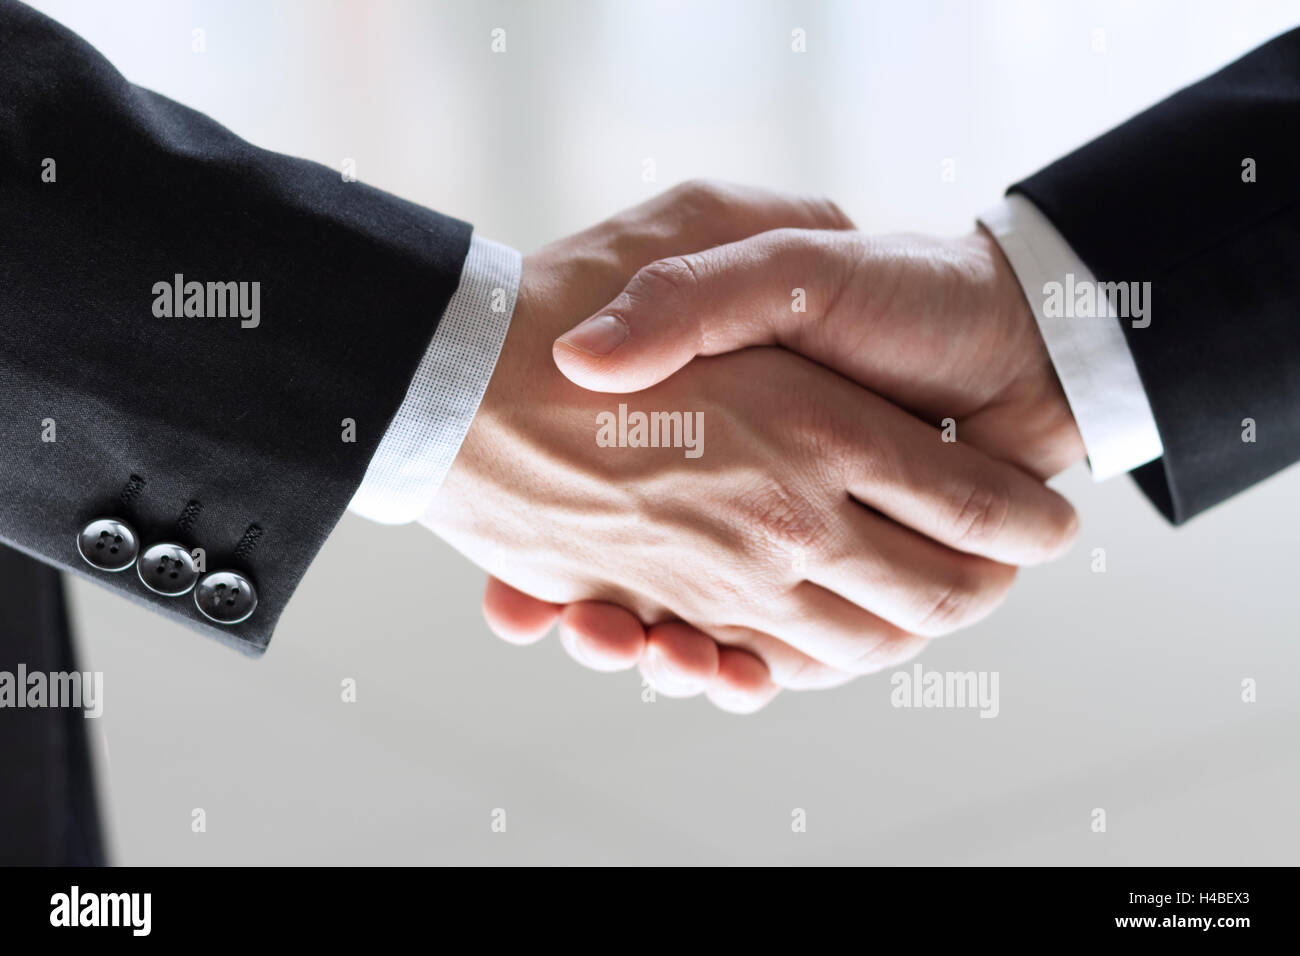 Businessmen shaking hand Stock Photo